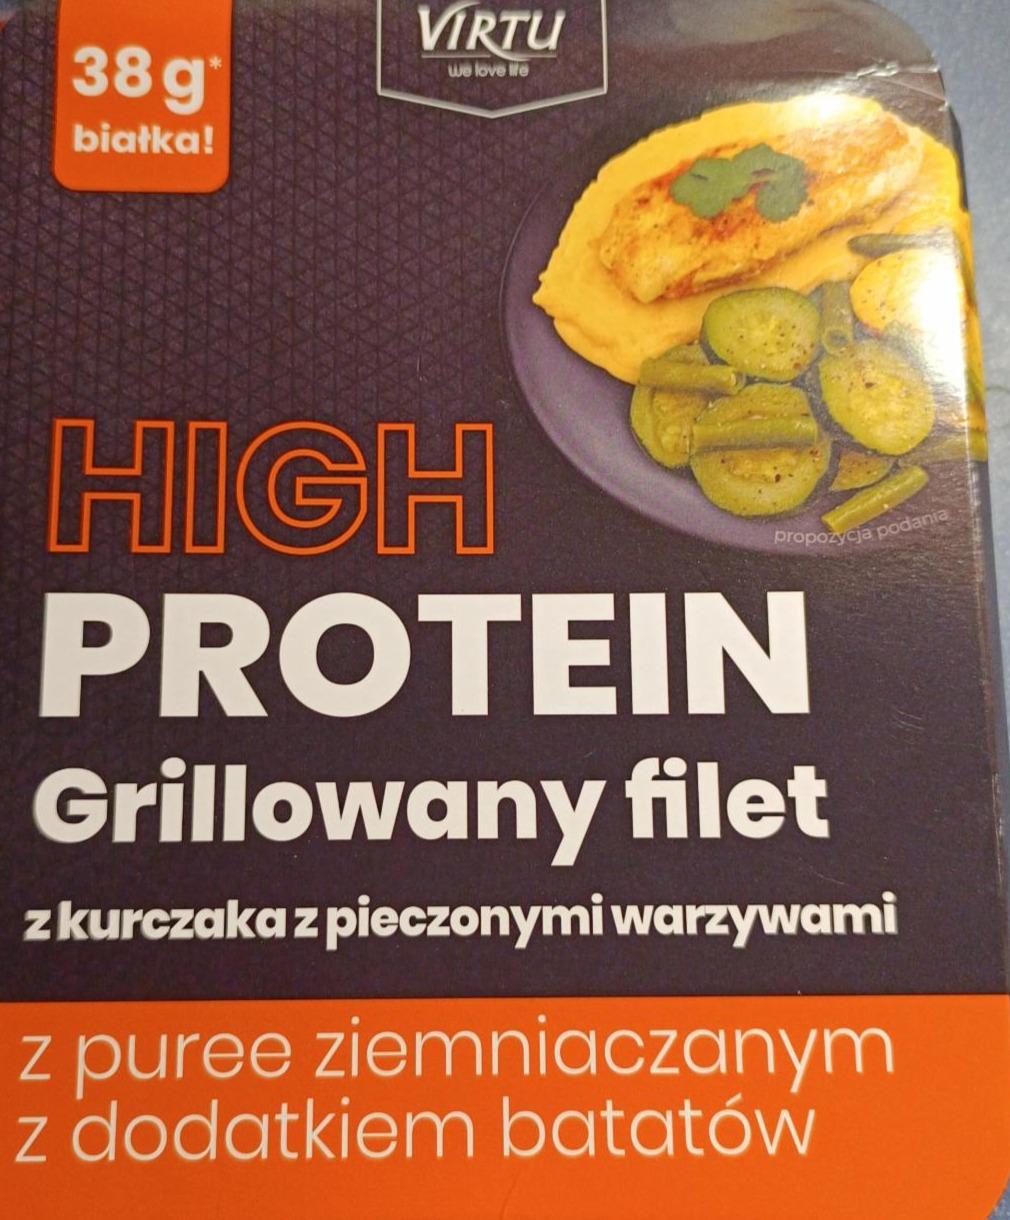 Fotografie - High protein grillowany filet z kurczaka z pieczonymi warzywami Virtu